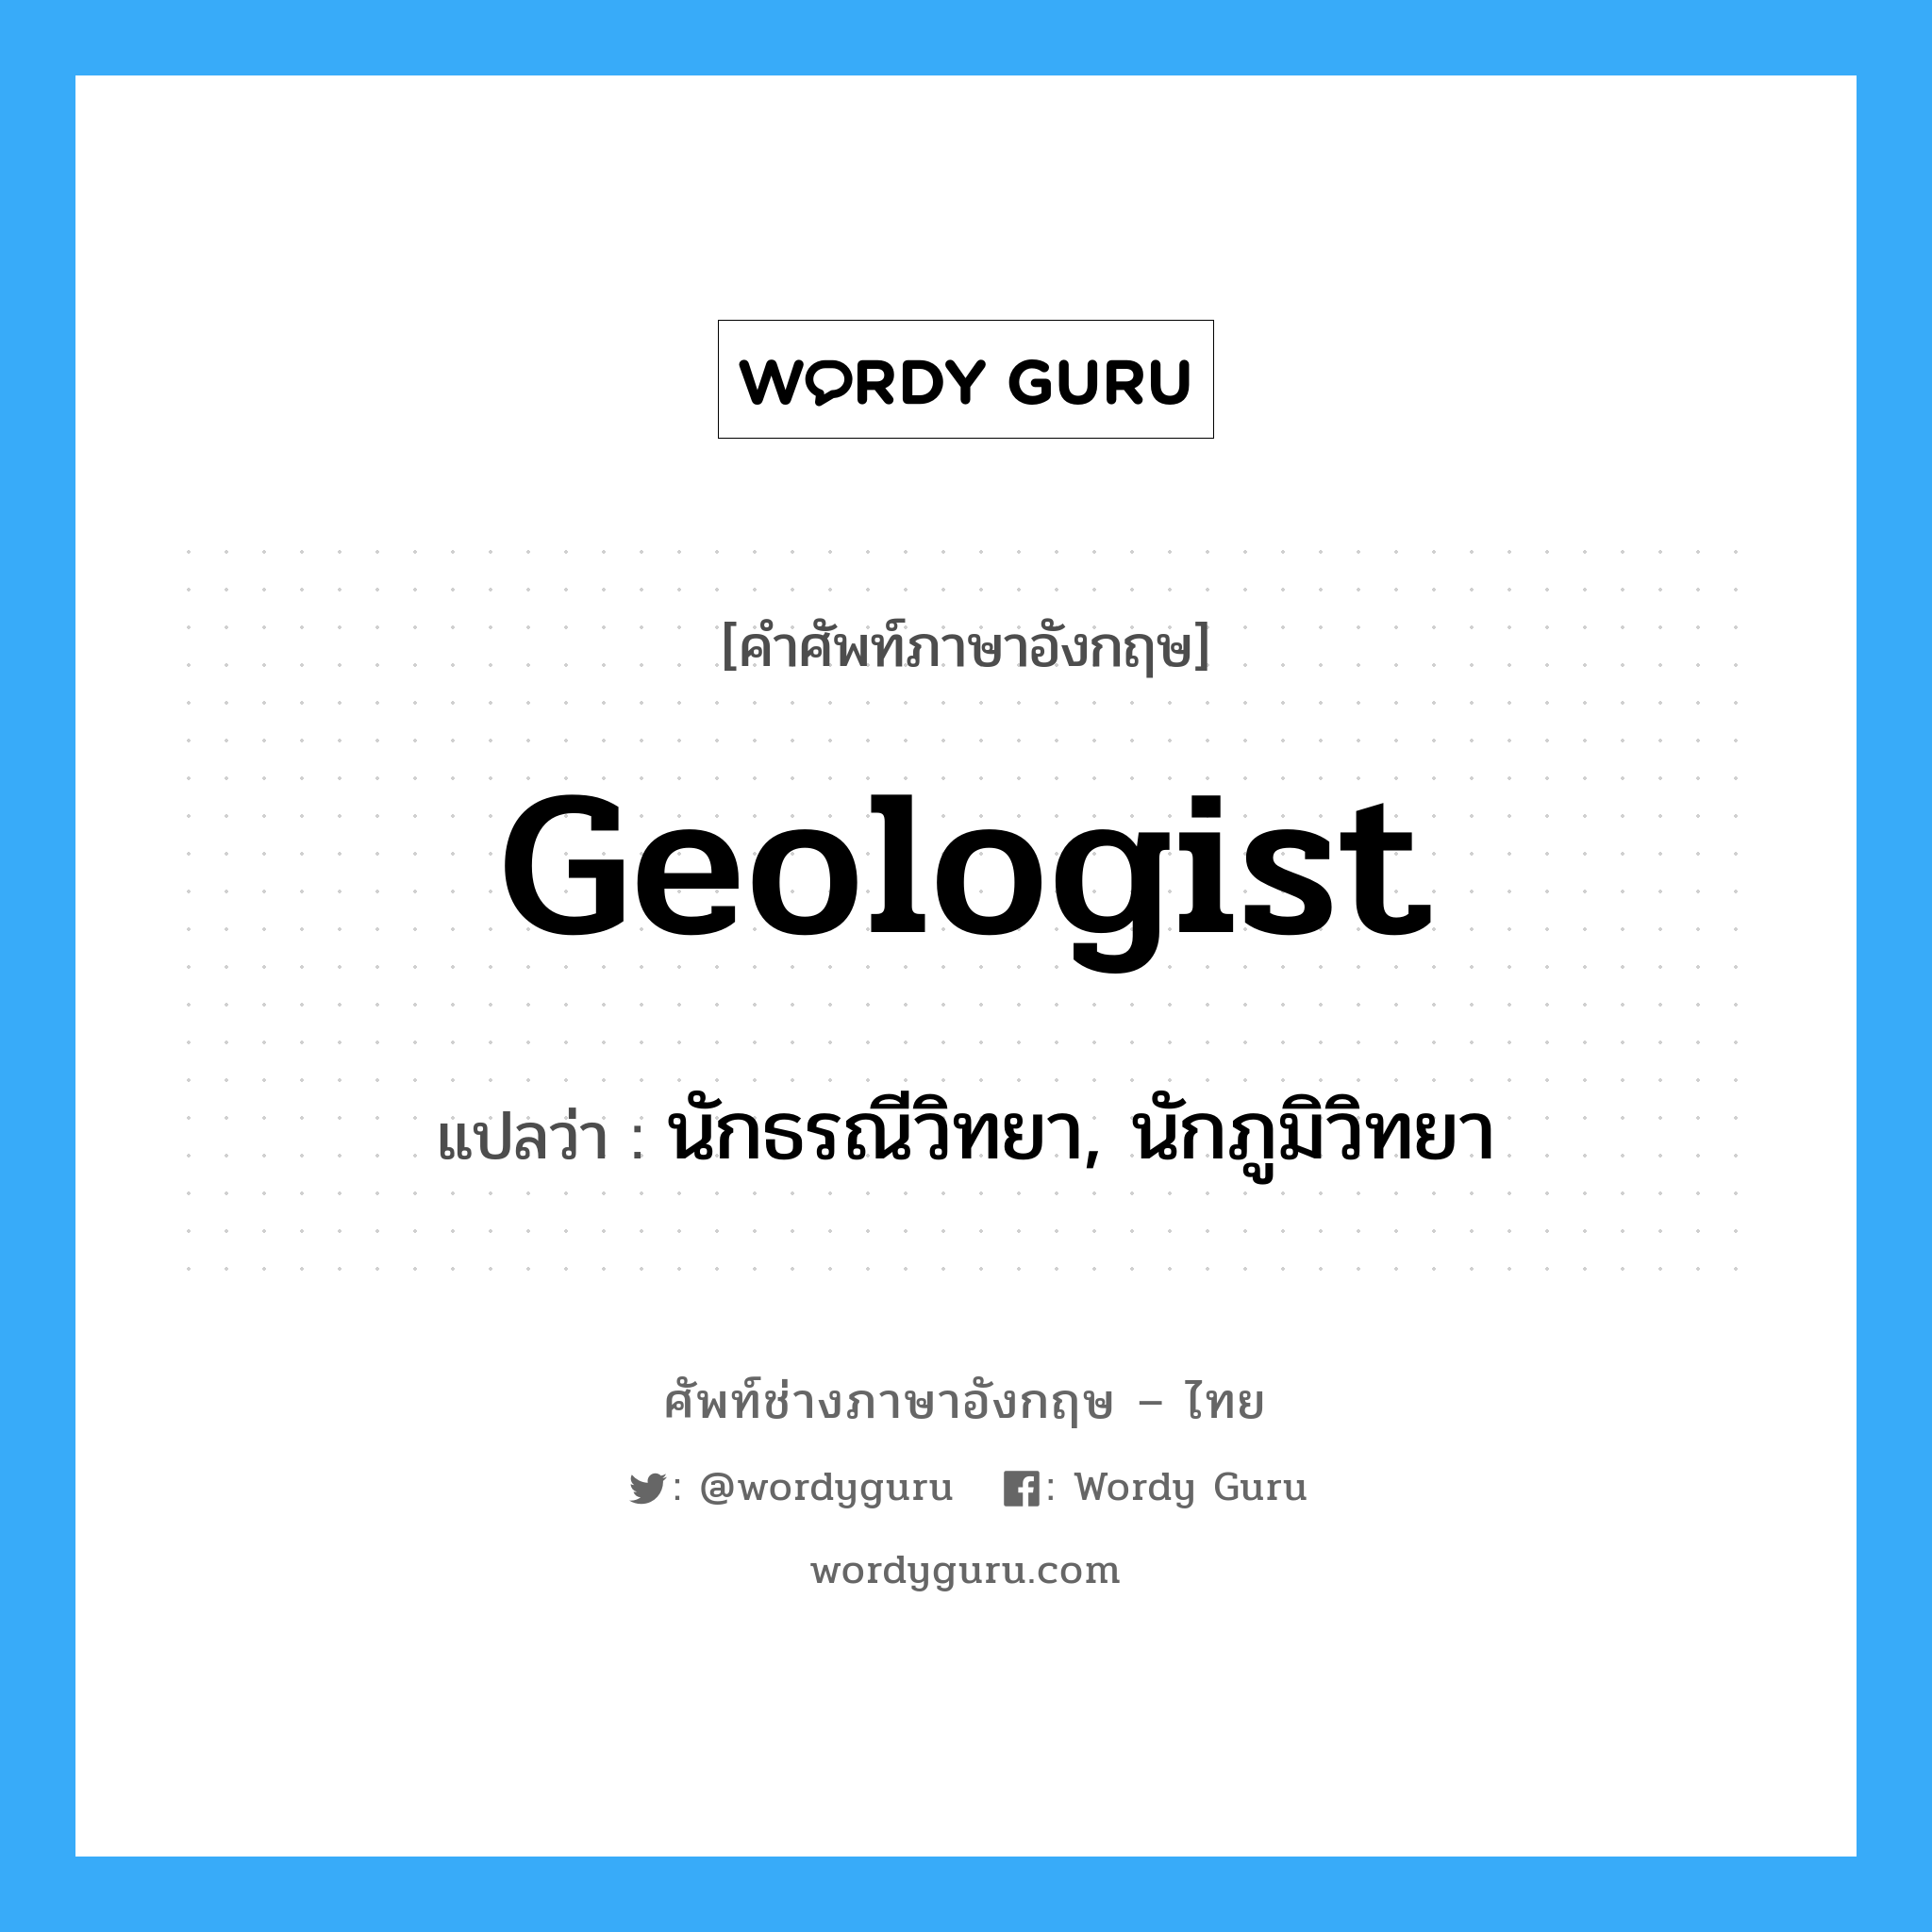 นักธรณีวิทยา, นักภูมิวิทยา ภาษาอังกฤษ?, คำศัพท์ช่างภาษาอังกฤษ - ไทย นักธรณีวิทยา, นักภูมิวิทยา คำศัพท์ภาษาอังกฤษ นักธรณีวิทยา, นักภูมิวิทยา แปลว่า geologist